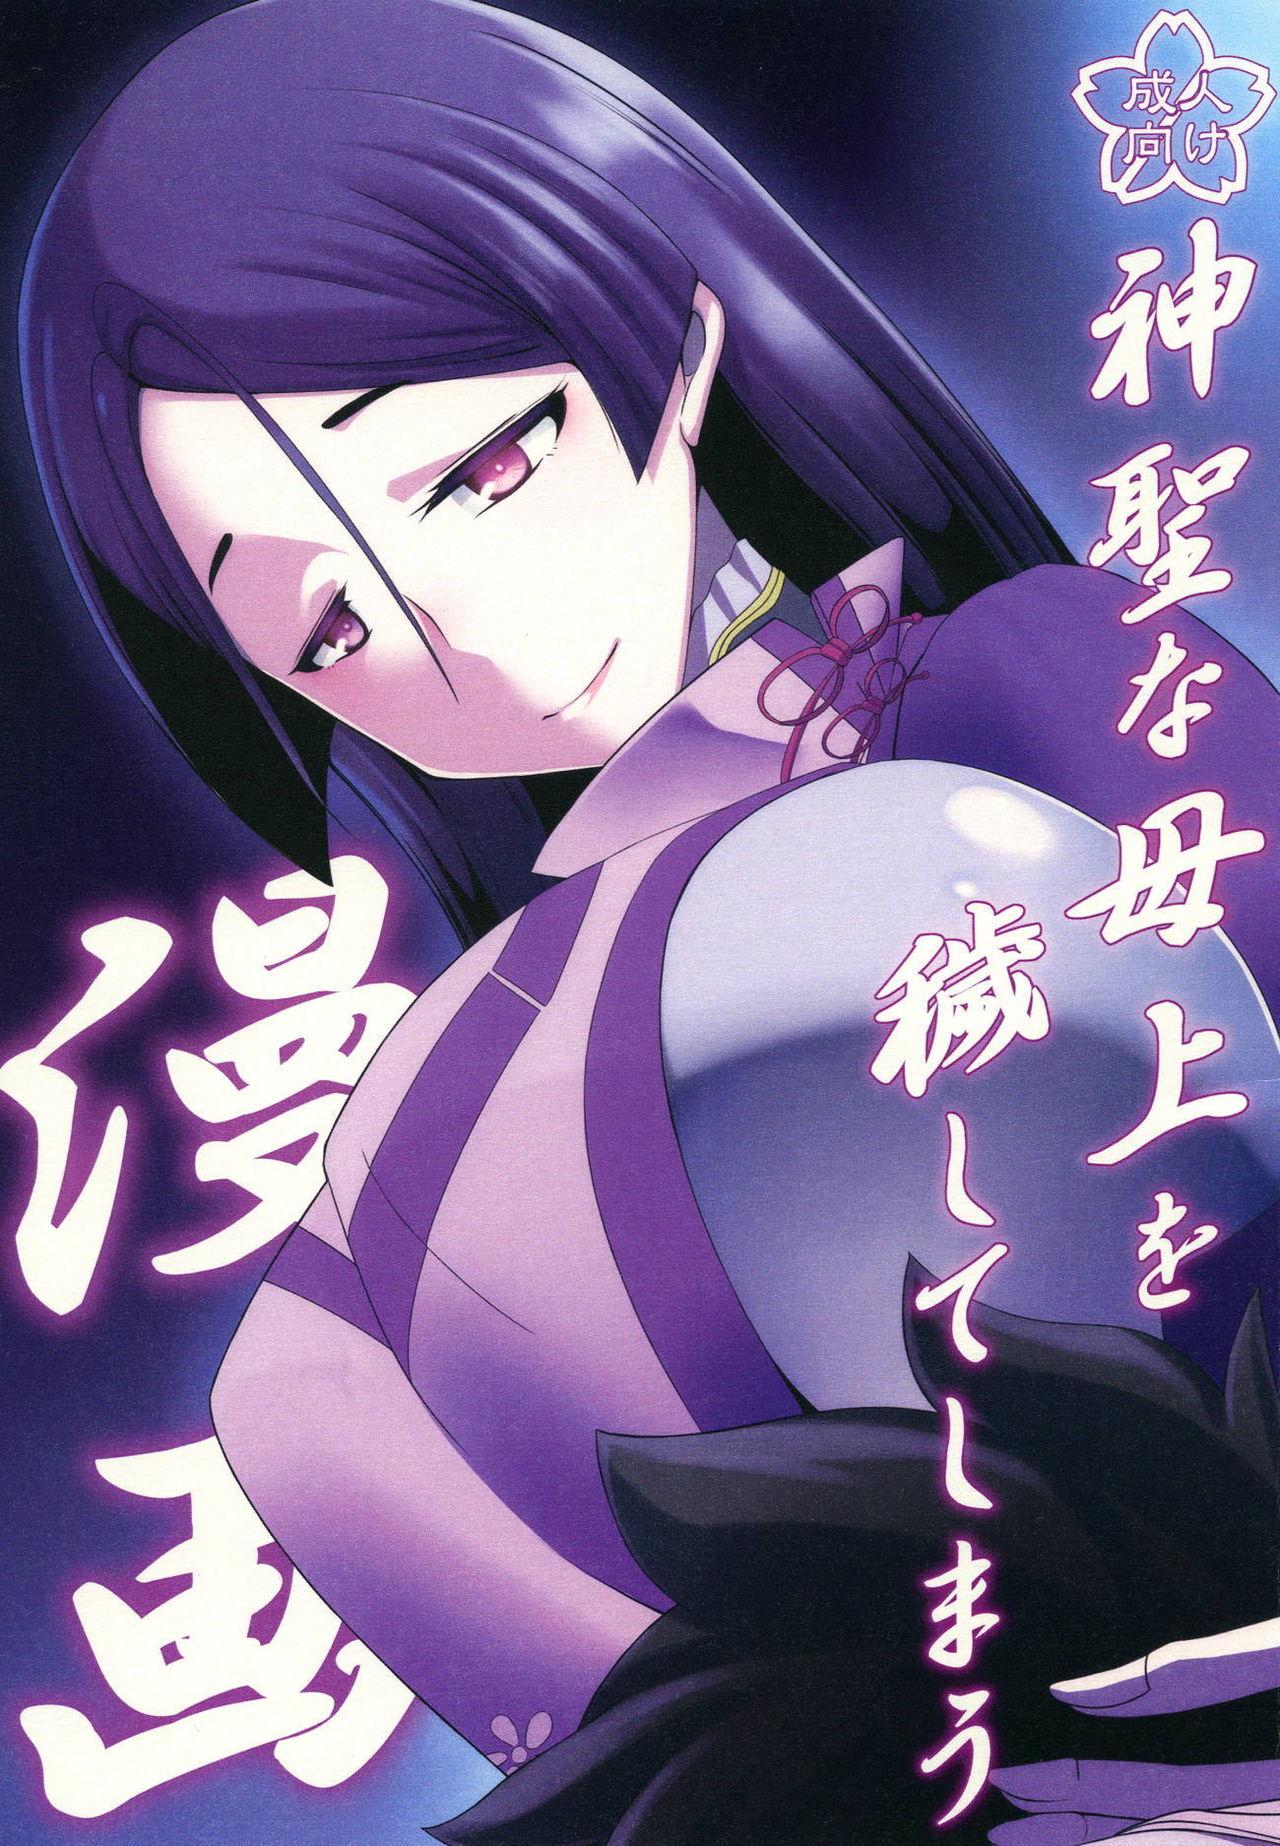 Anal Sex Shinsei na Hahaue o Kegashite Shimau Manga - Fate grand order Dress - Picture 1